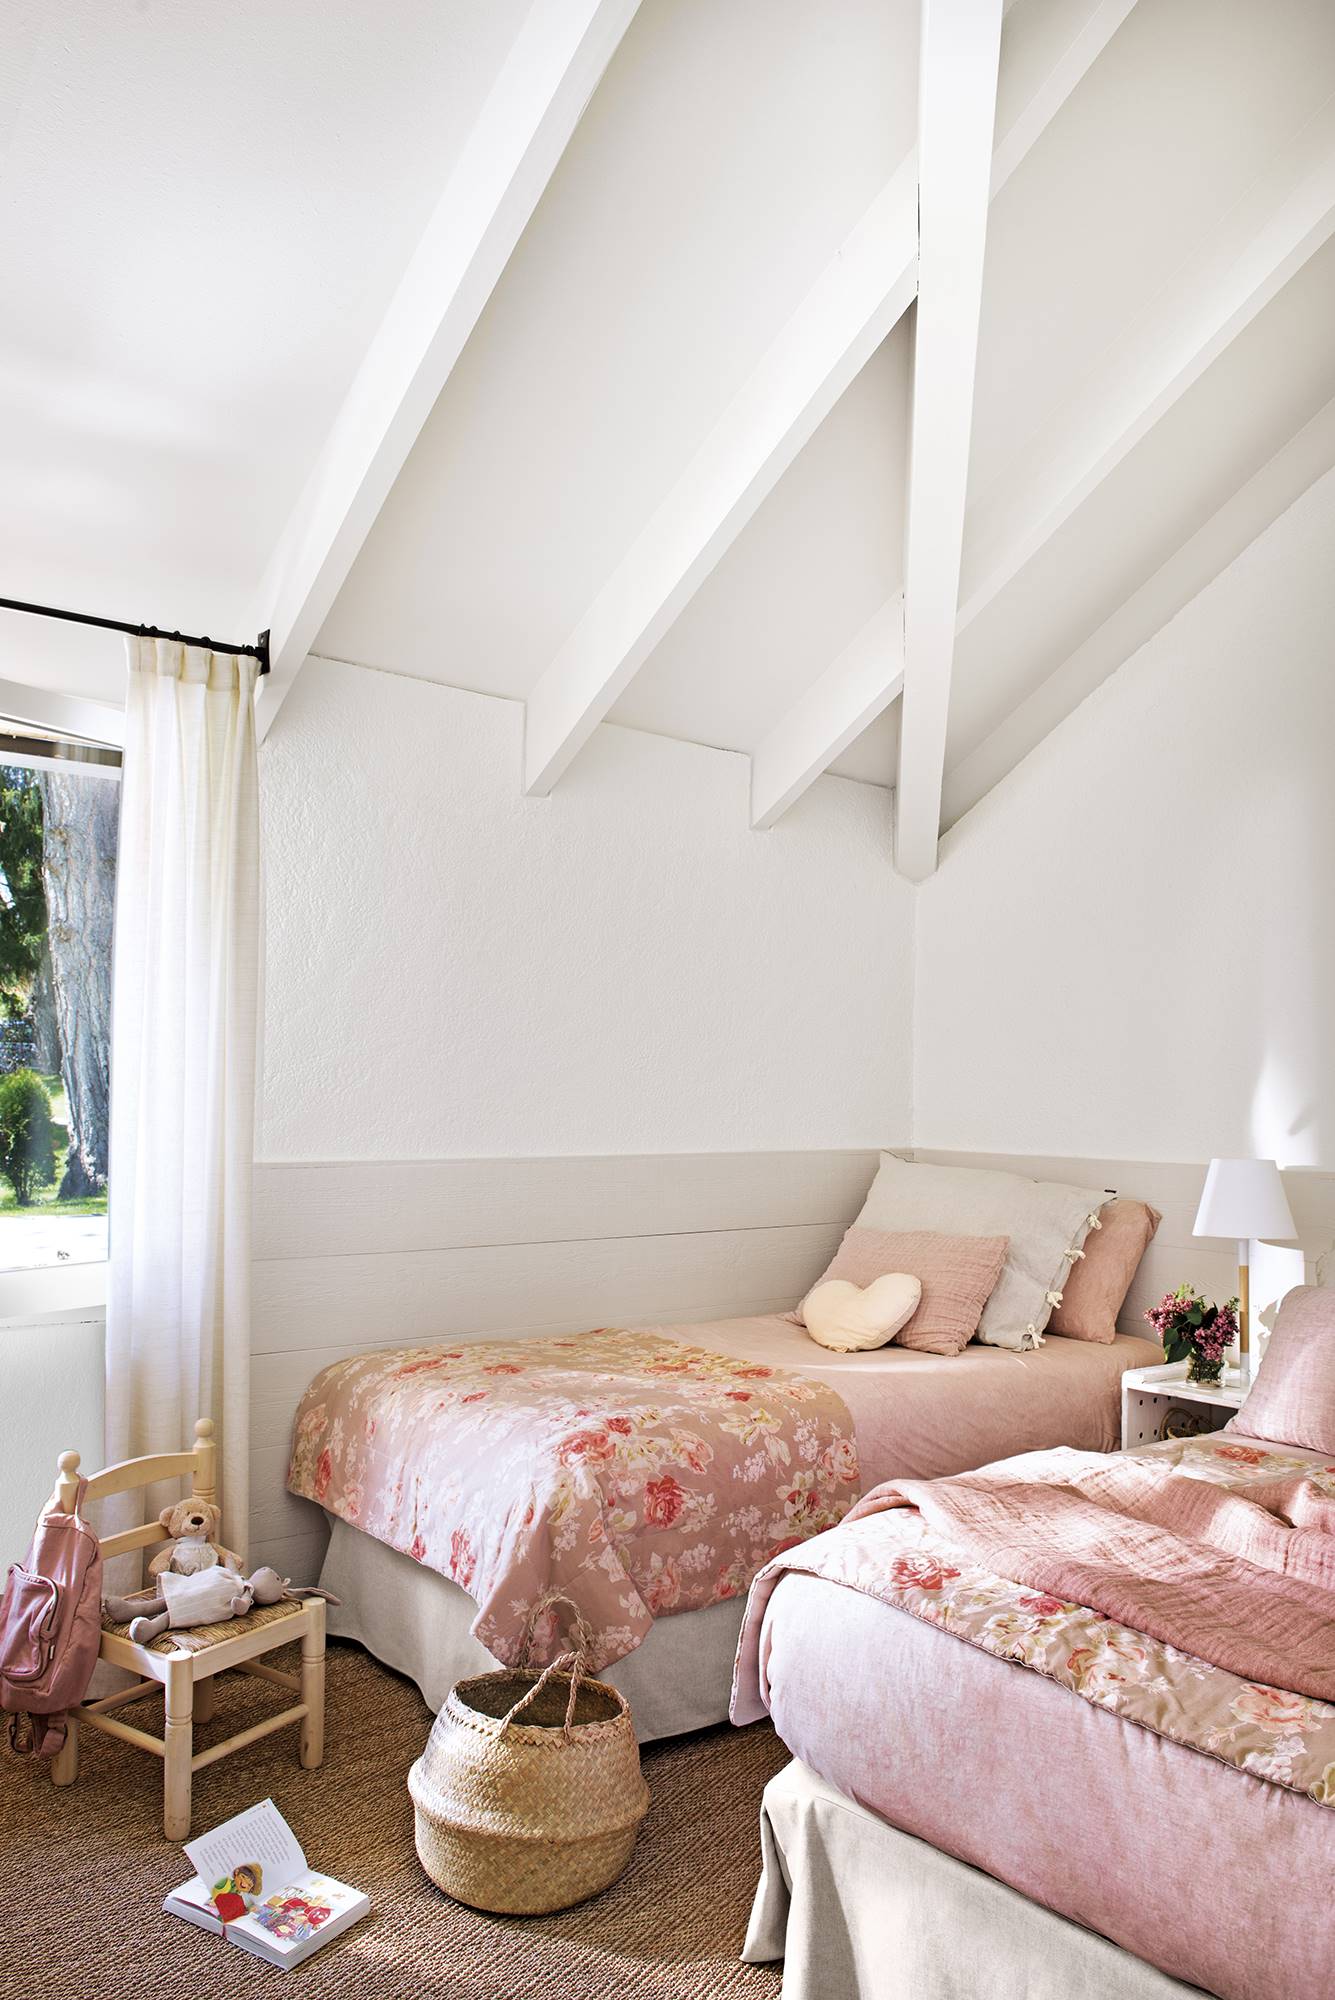  Dormitorio infantil en buhardilla en rosas